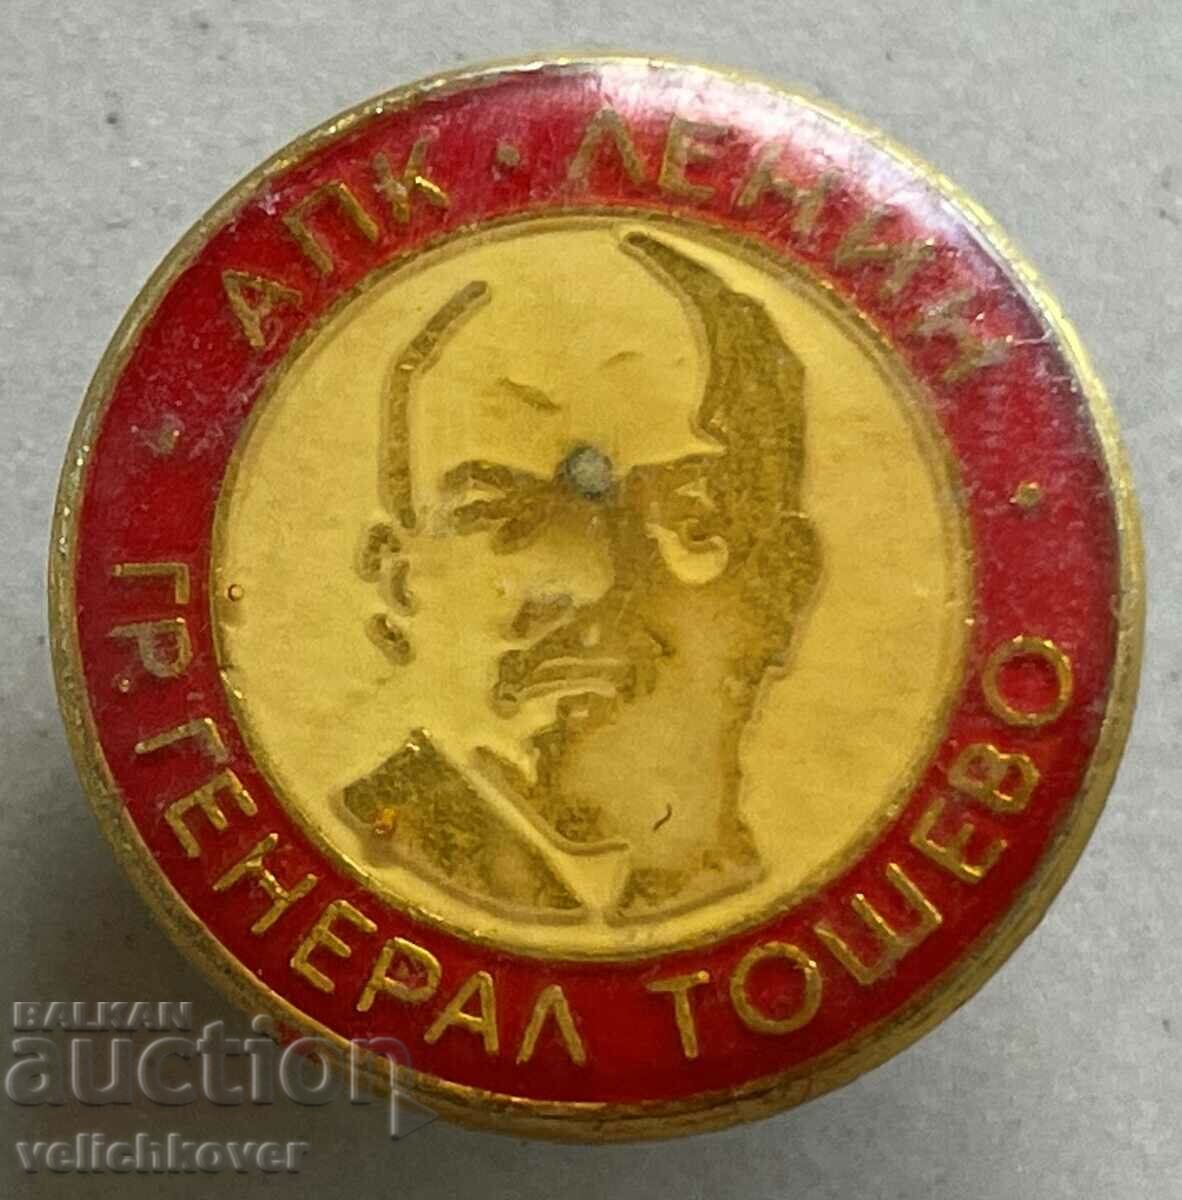 34261 Bulgaria APC sign V.Lenin General Toshevo